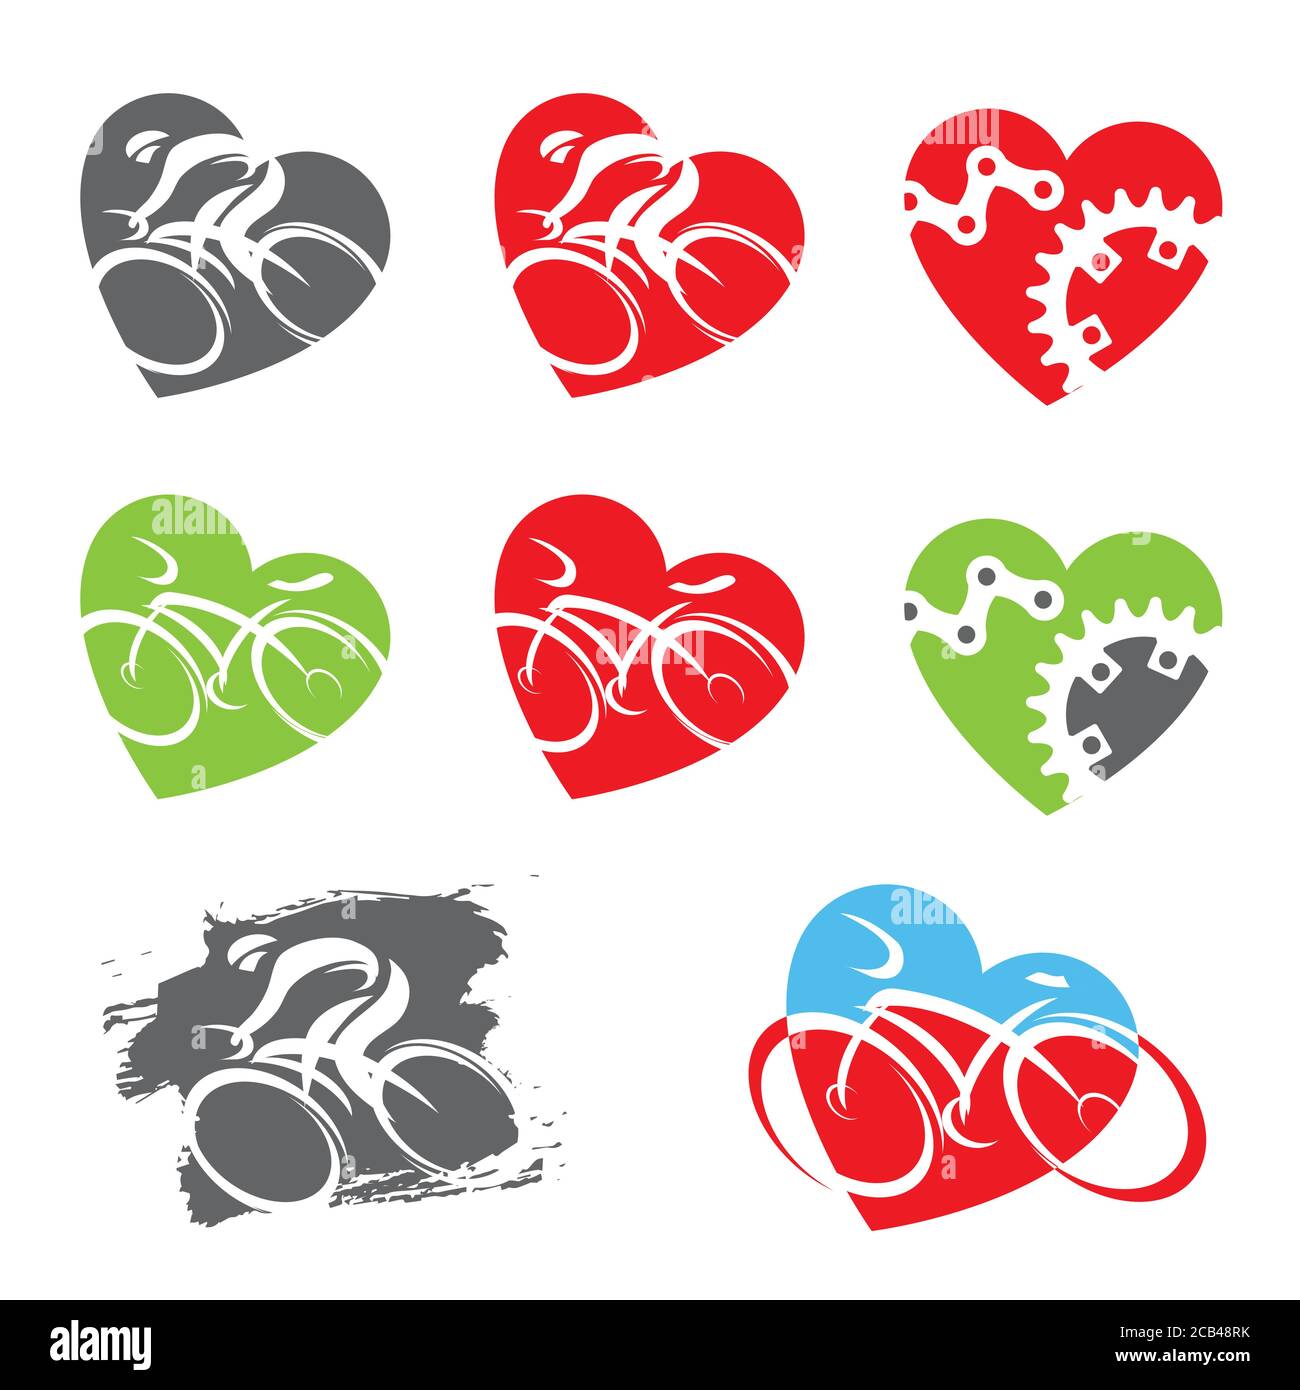 Radsport-Symbole in Herzform. Set von bunten Symbolen mit Radfahrern und Radsportelementen. Vektor verfügbar. Stock Vektor